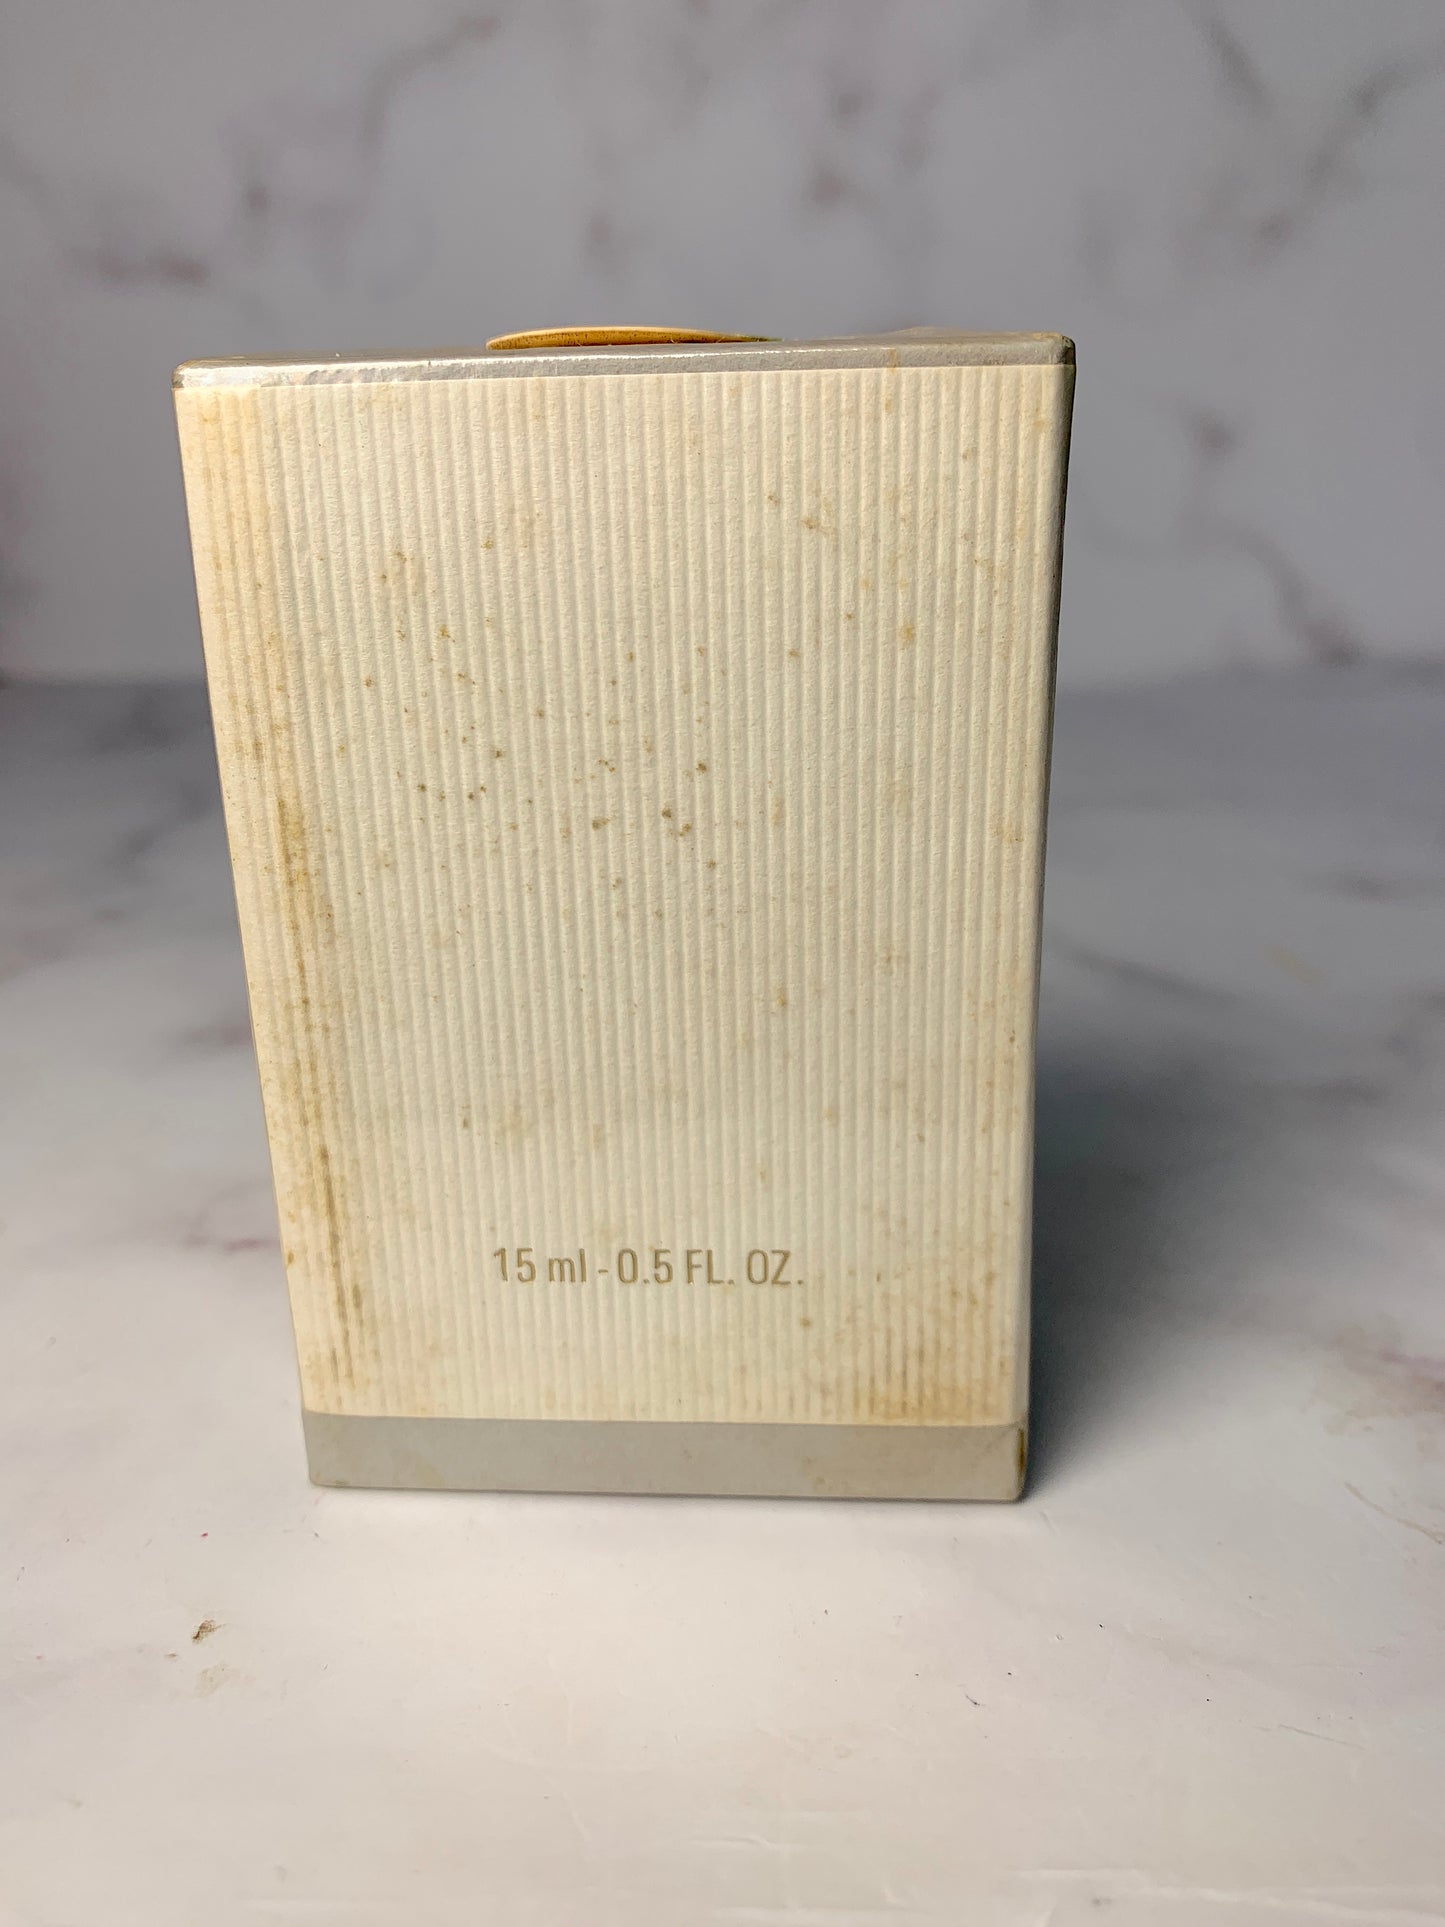 稀有密封 Christian Dior 15 毫升 1/2 盎司香水帶盒 - 030124